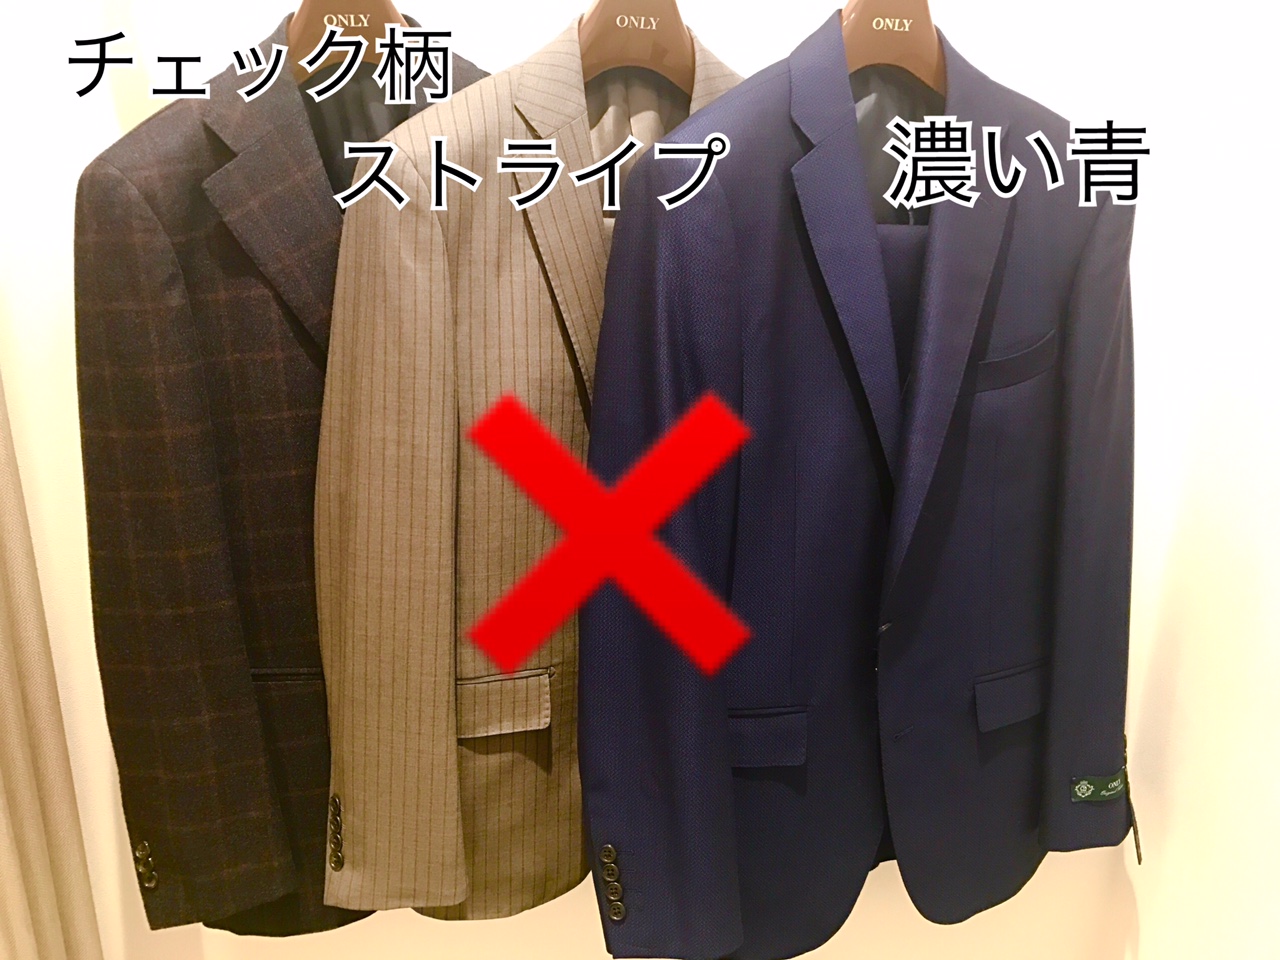 就活スーツ Onlyイオンモールkyoto店 Only Shop Blog